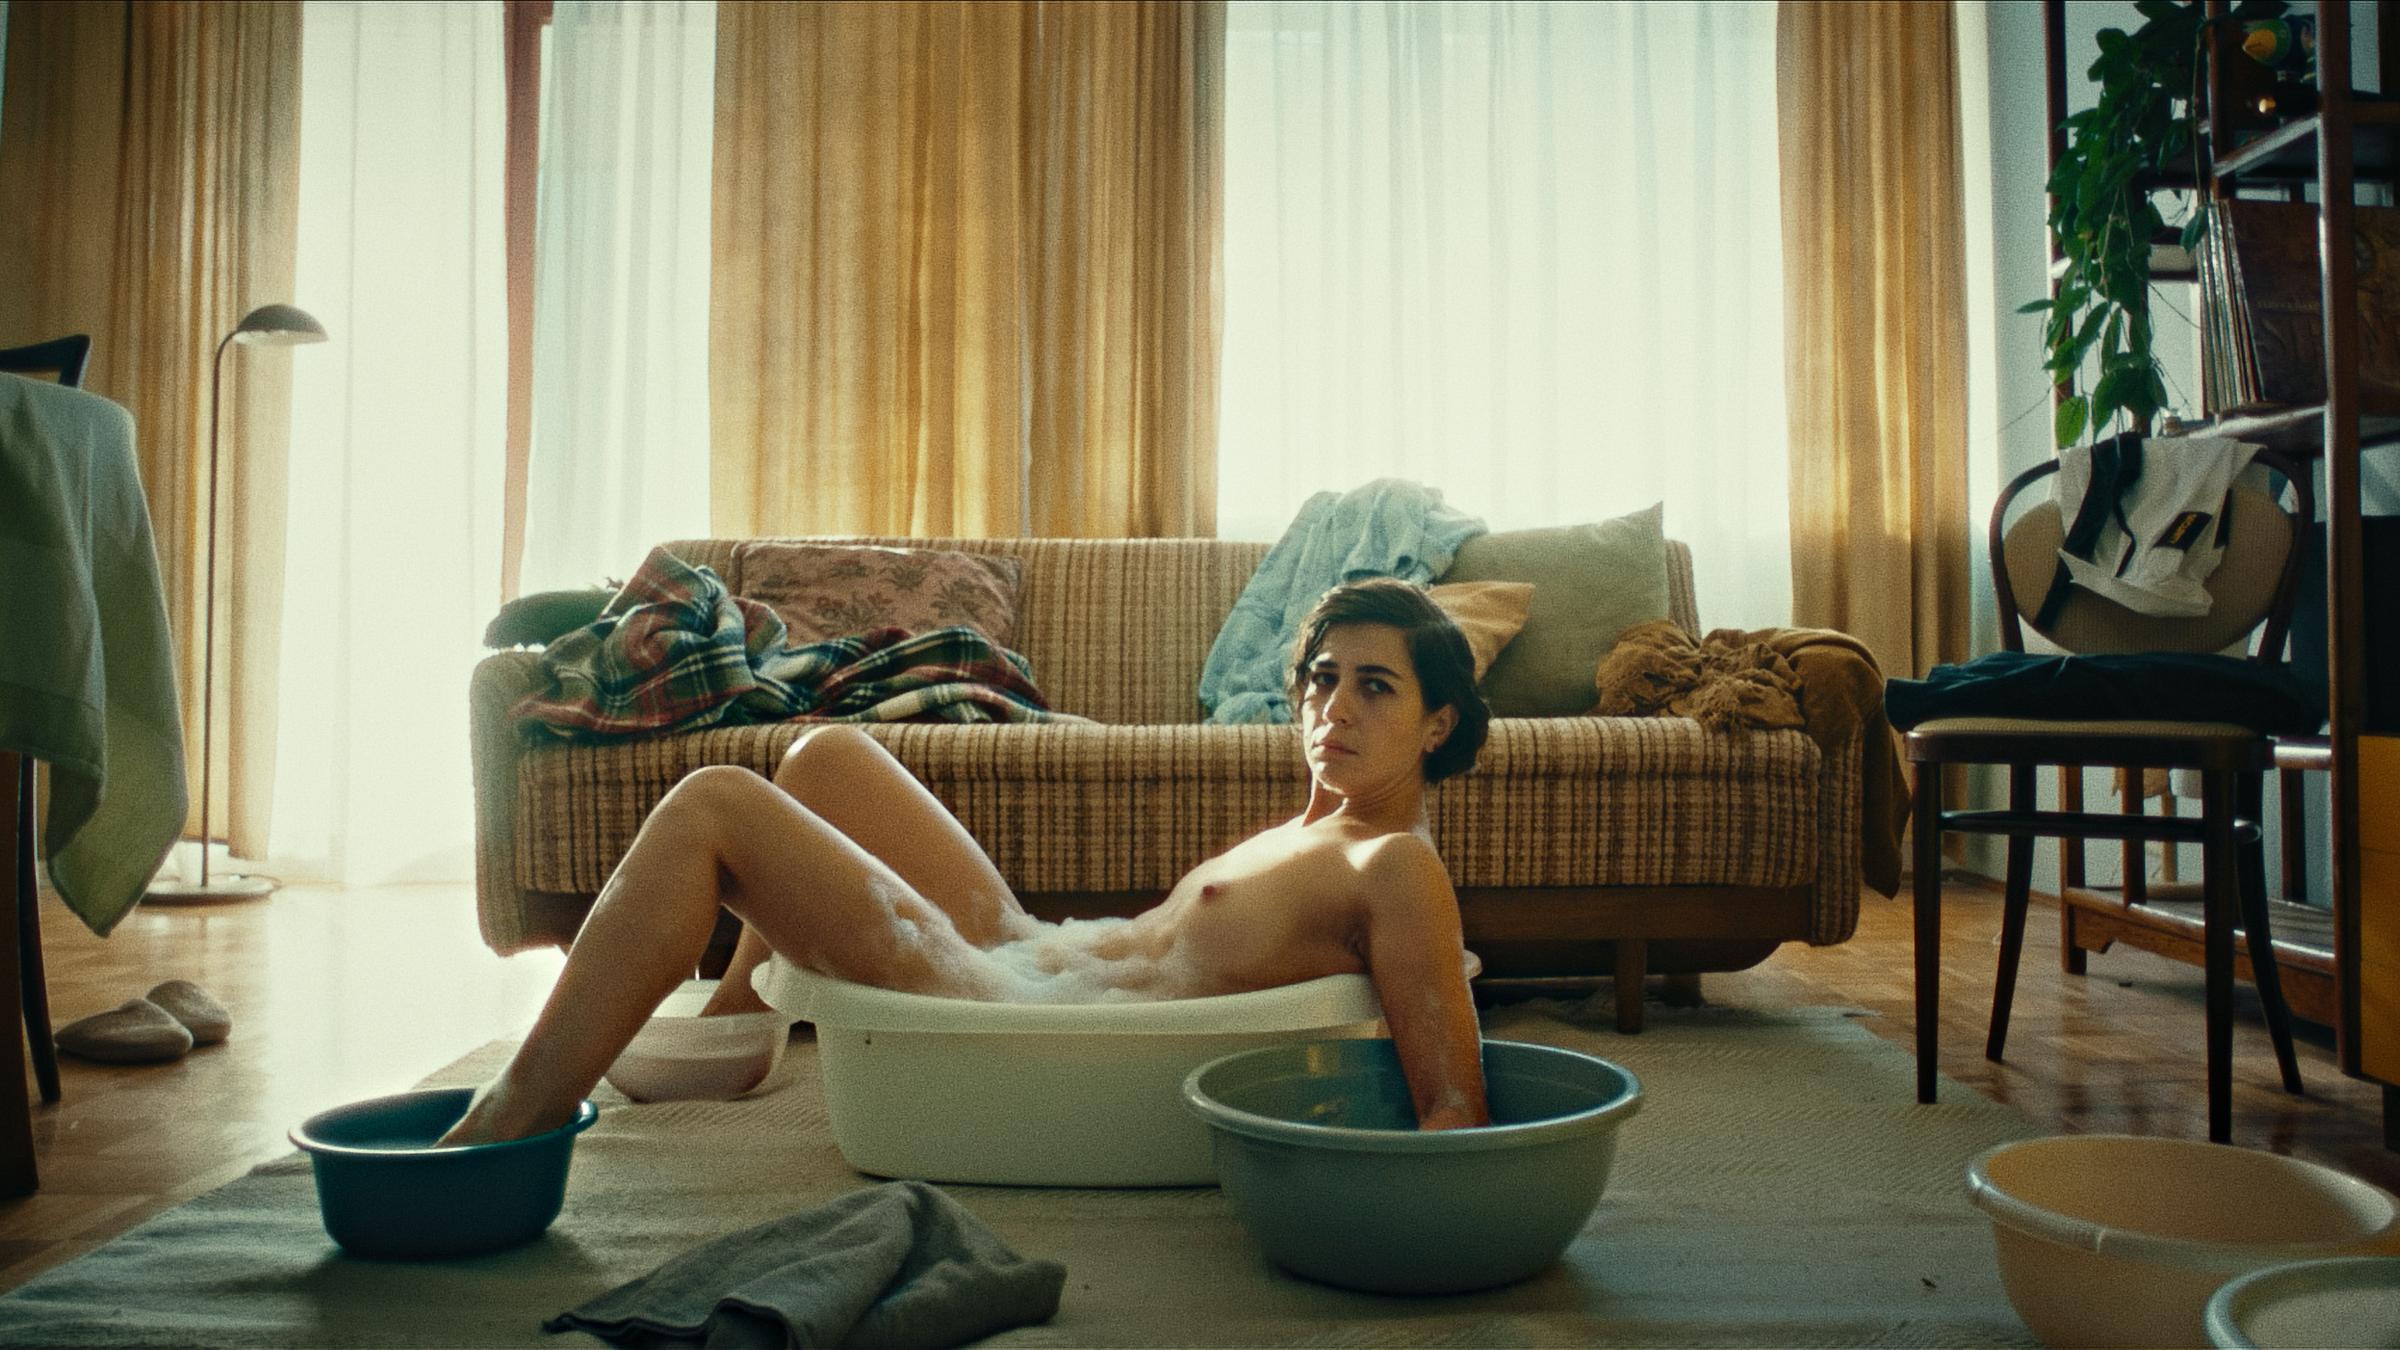 Eine Frau liegt nackt vor einer Couch badet Hände und Füße in Schüsseln...</p>

                        <a href=